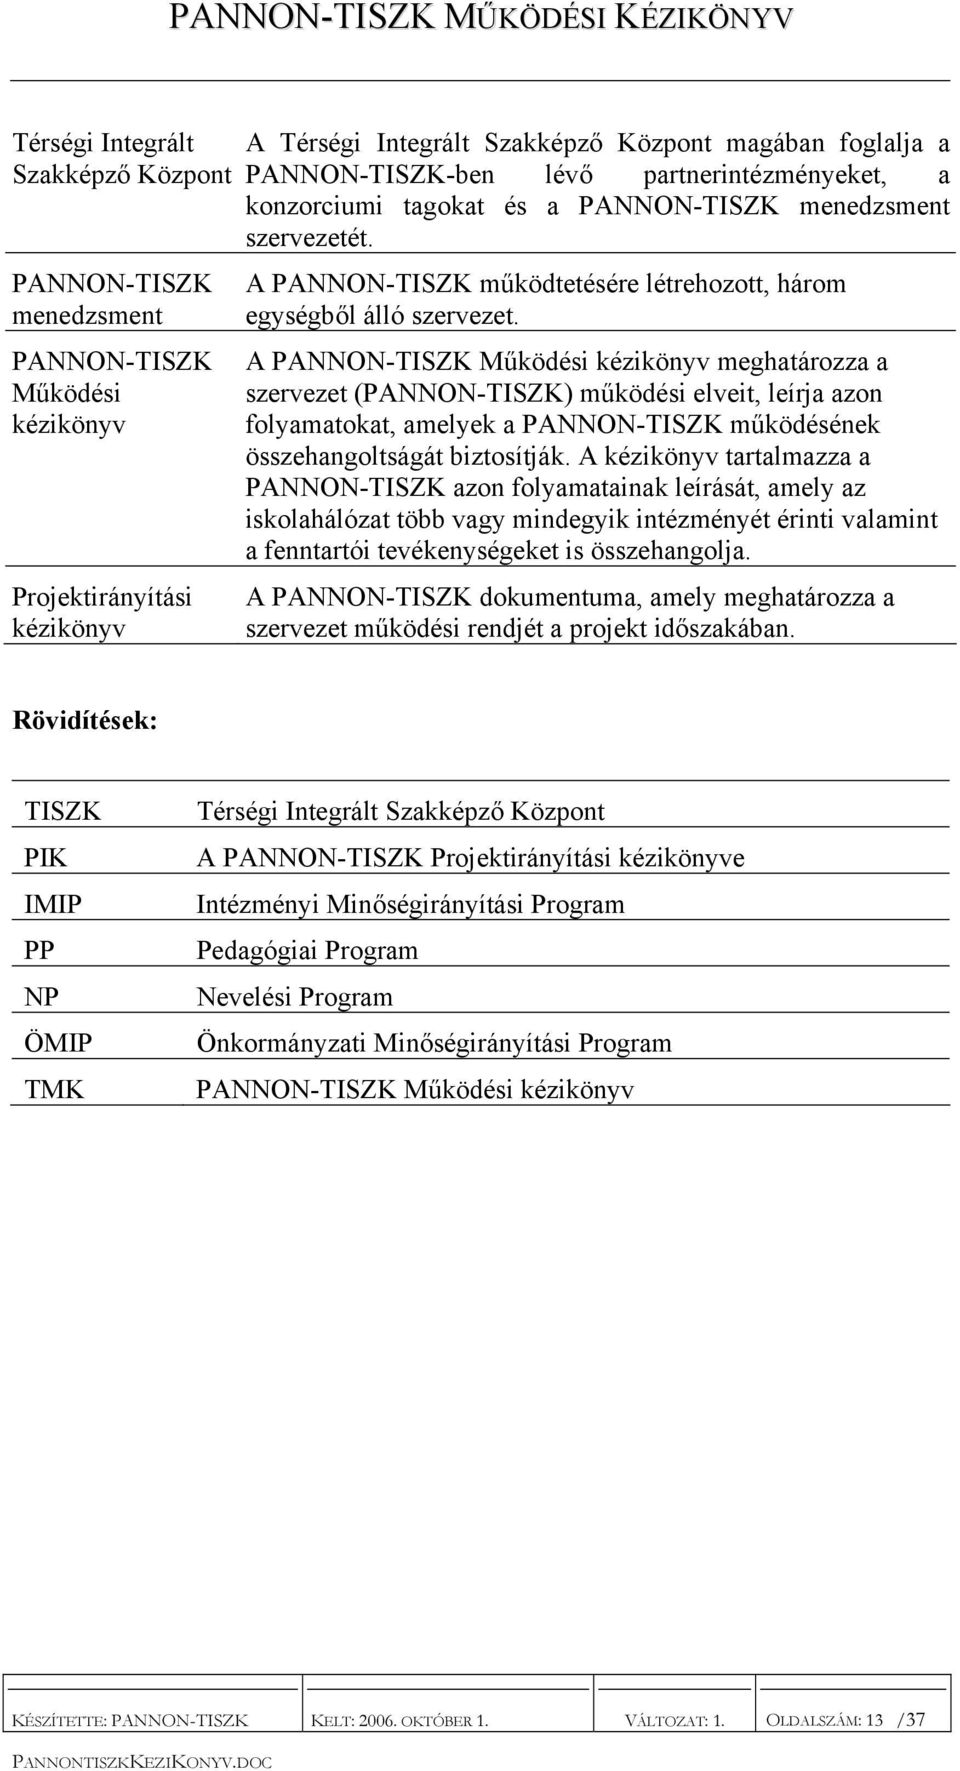 A PANNON-TISZK Működési kézikönyv meghatározza a szervezet (PANNON-TISZK) működési elveit, leírja azon folyamatokat, amelyek a PANNON-TISZK működésének összehangoltságát biztosítják.